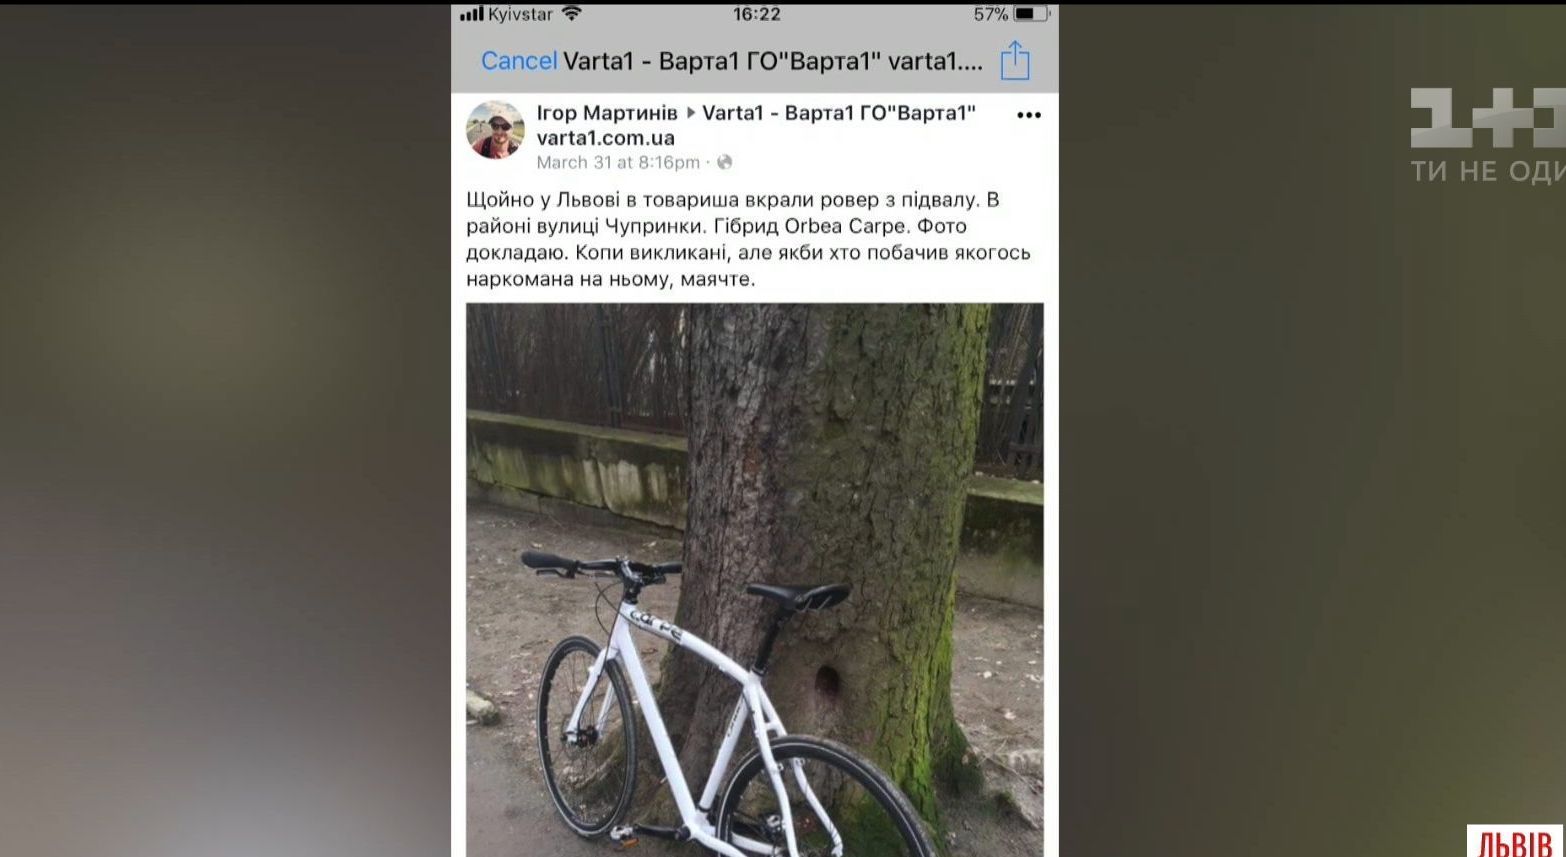 Во Львове похититель вернул украденный велосипед после огласки в соцсетях